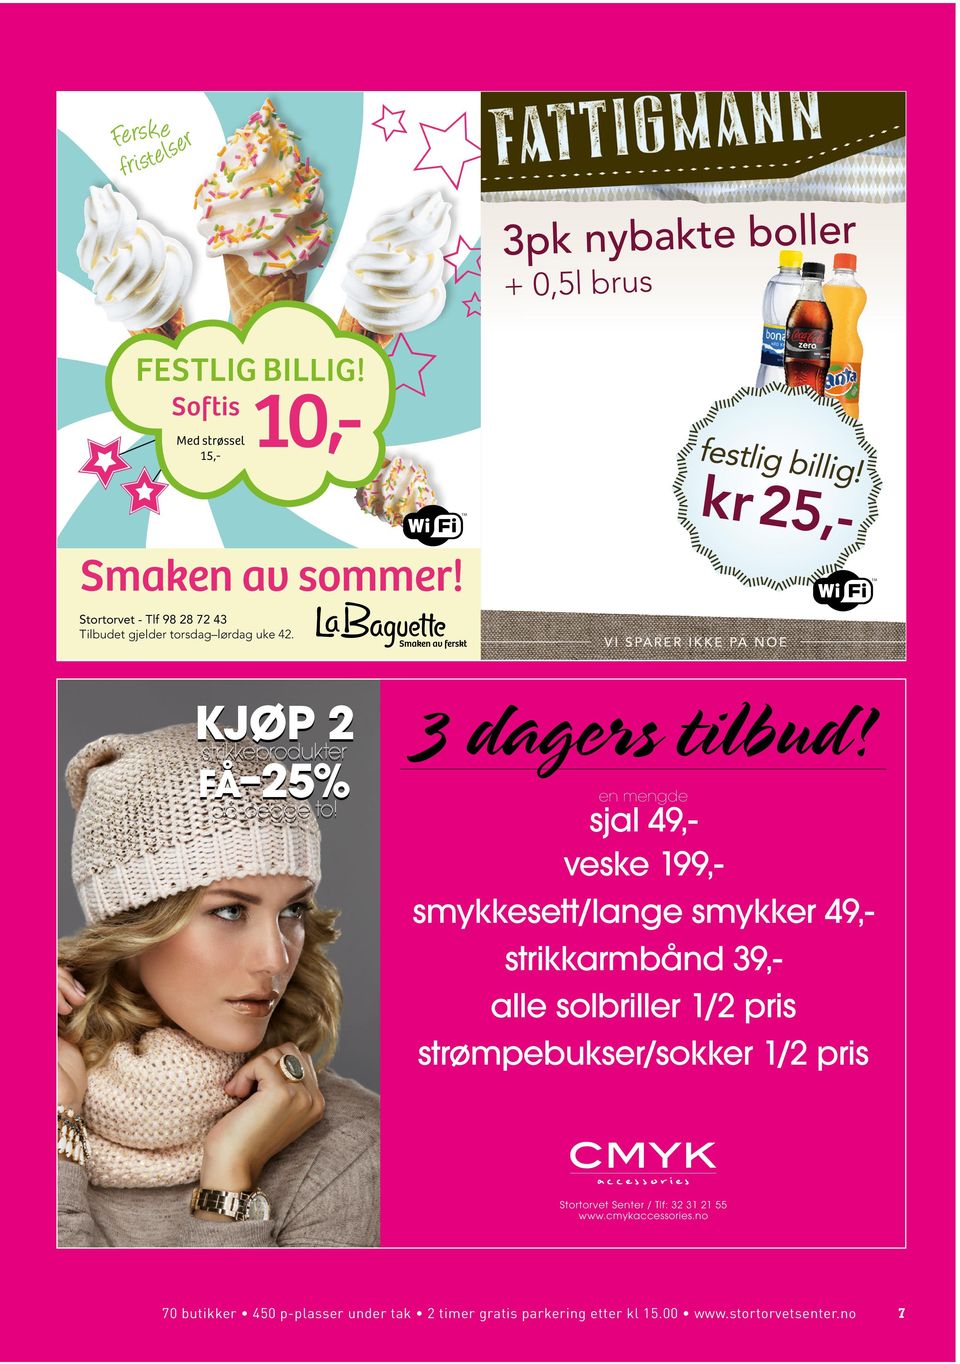 TM Stortorvet - Tlf 98 28 72 43 Tilbudet gjelder torsdag lørdag uke 42. kjøp 2 strikkeprodukter få 25% på begge to!